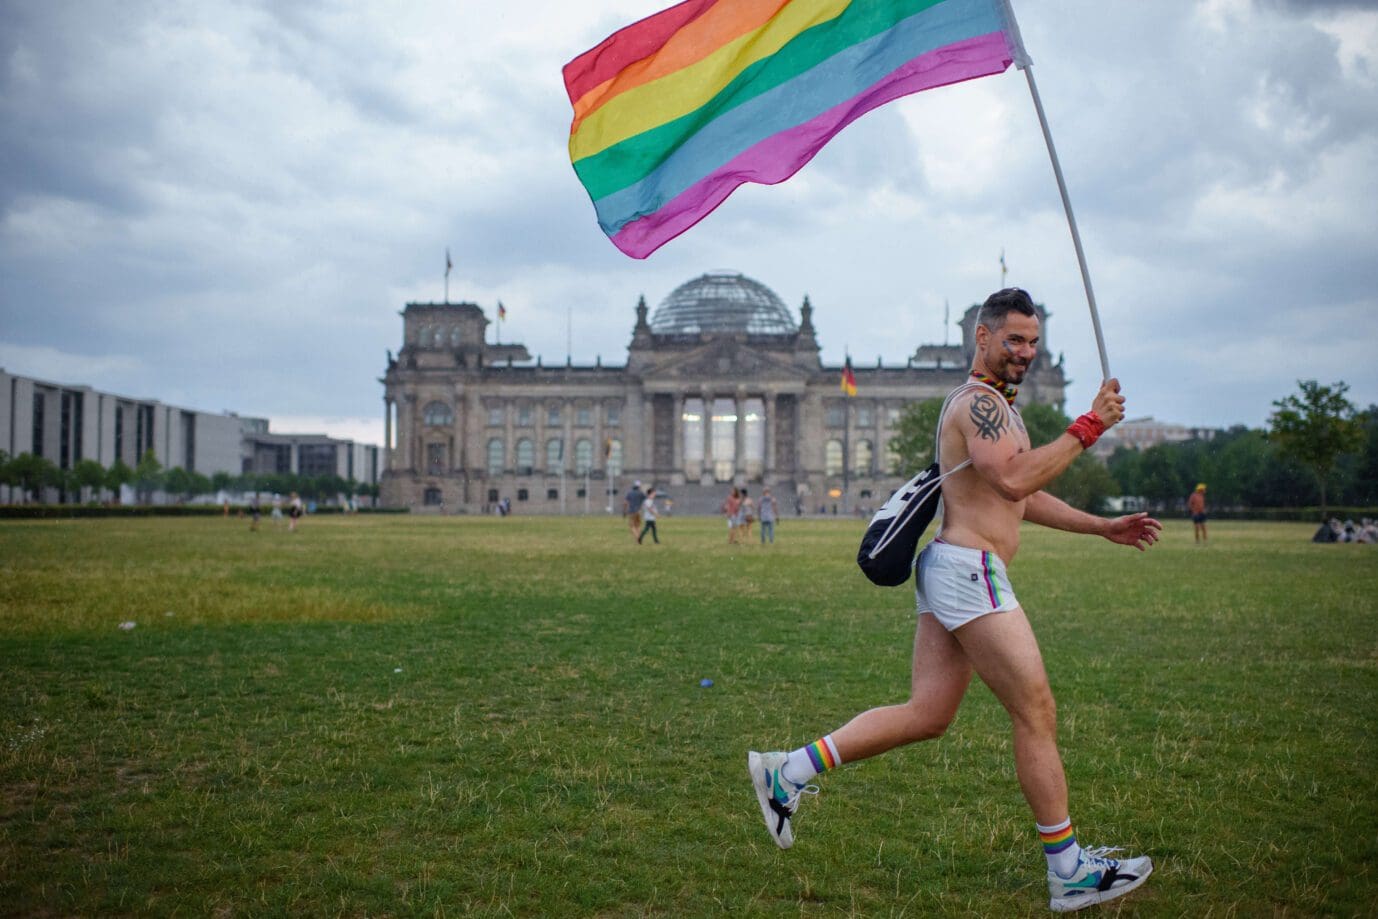 tag-des-grundgesetzes-queere-initiative-will-groesste-regenbogenflagge-deutschlands-vor-reichstag-aufspannen